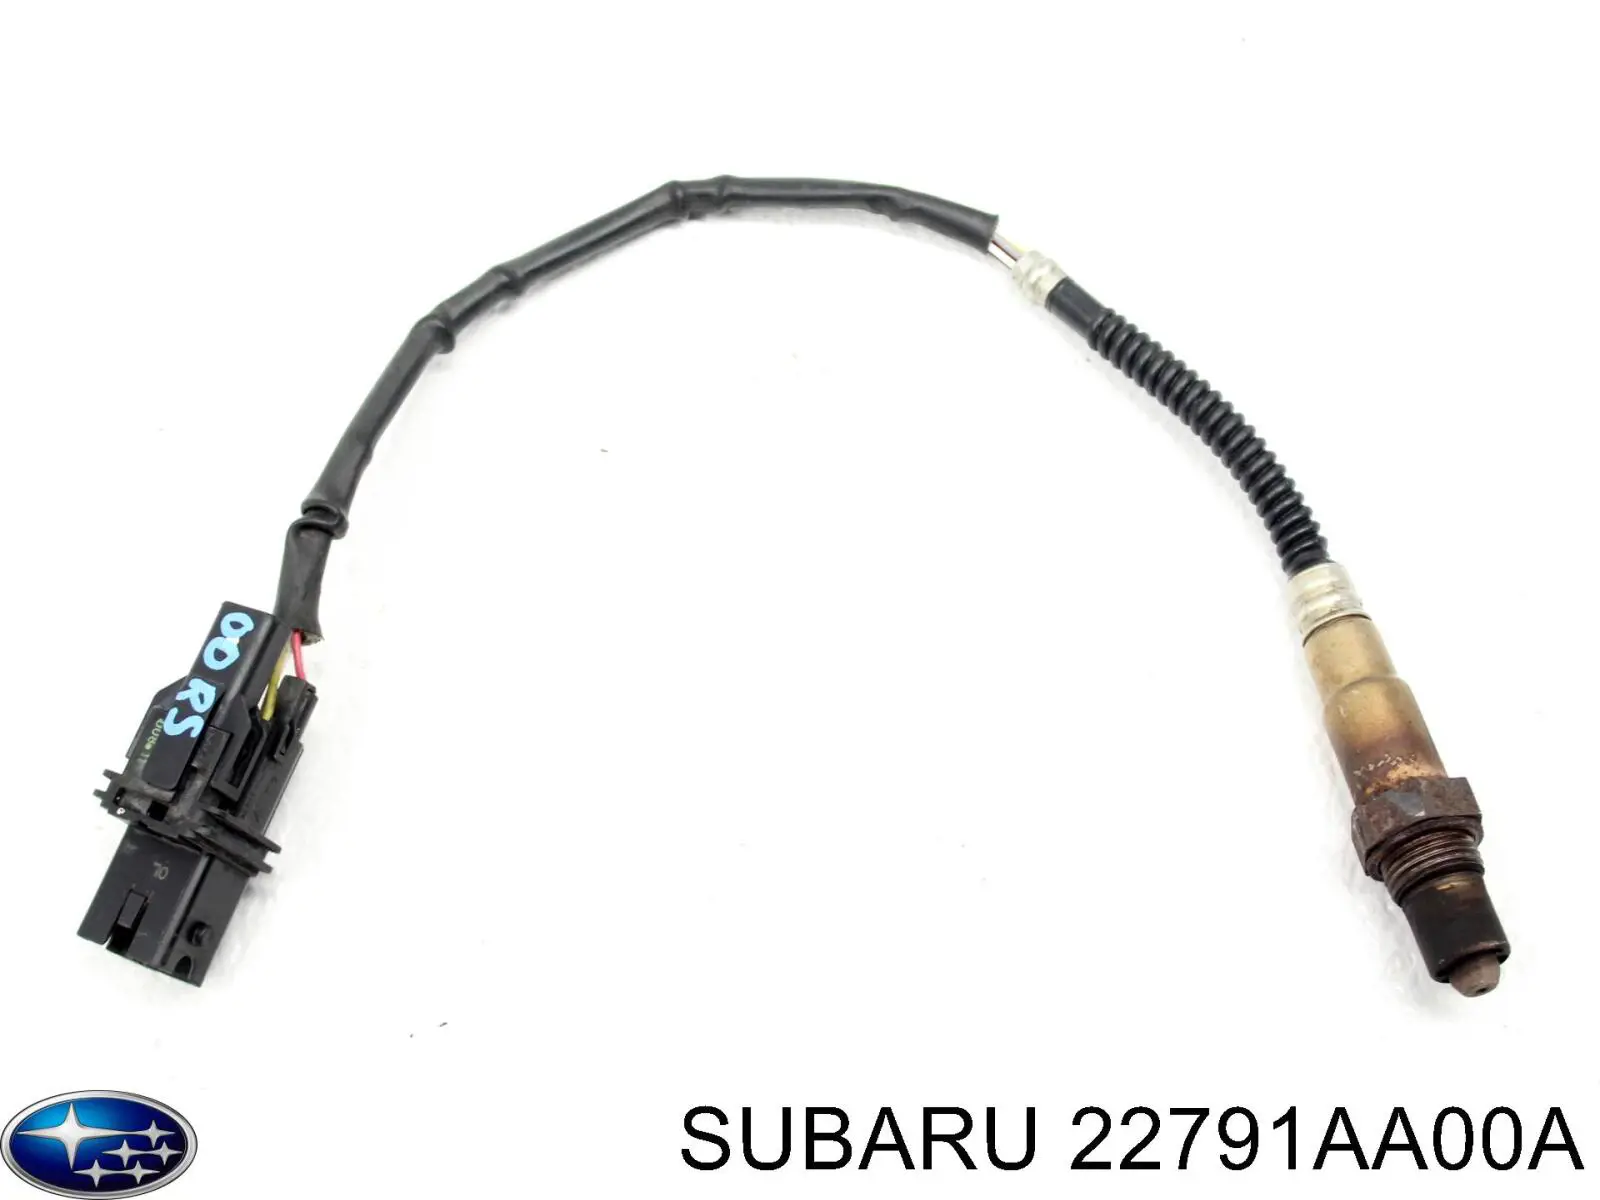 22791AA00A Subaru sonda lambda sensor de oxigeno para catalizador